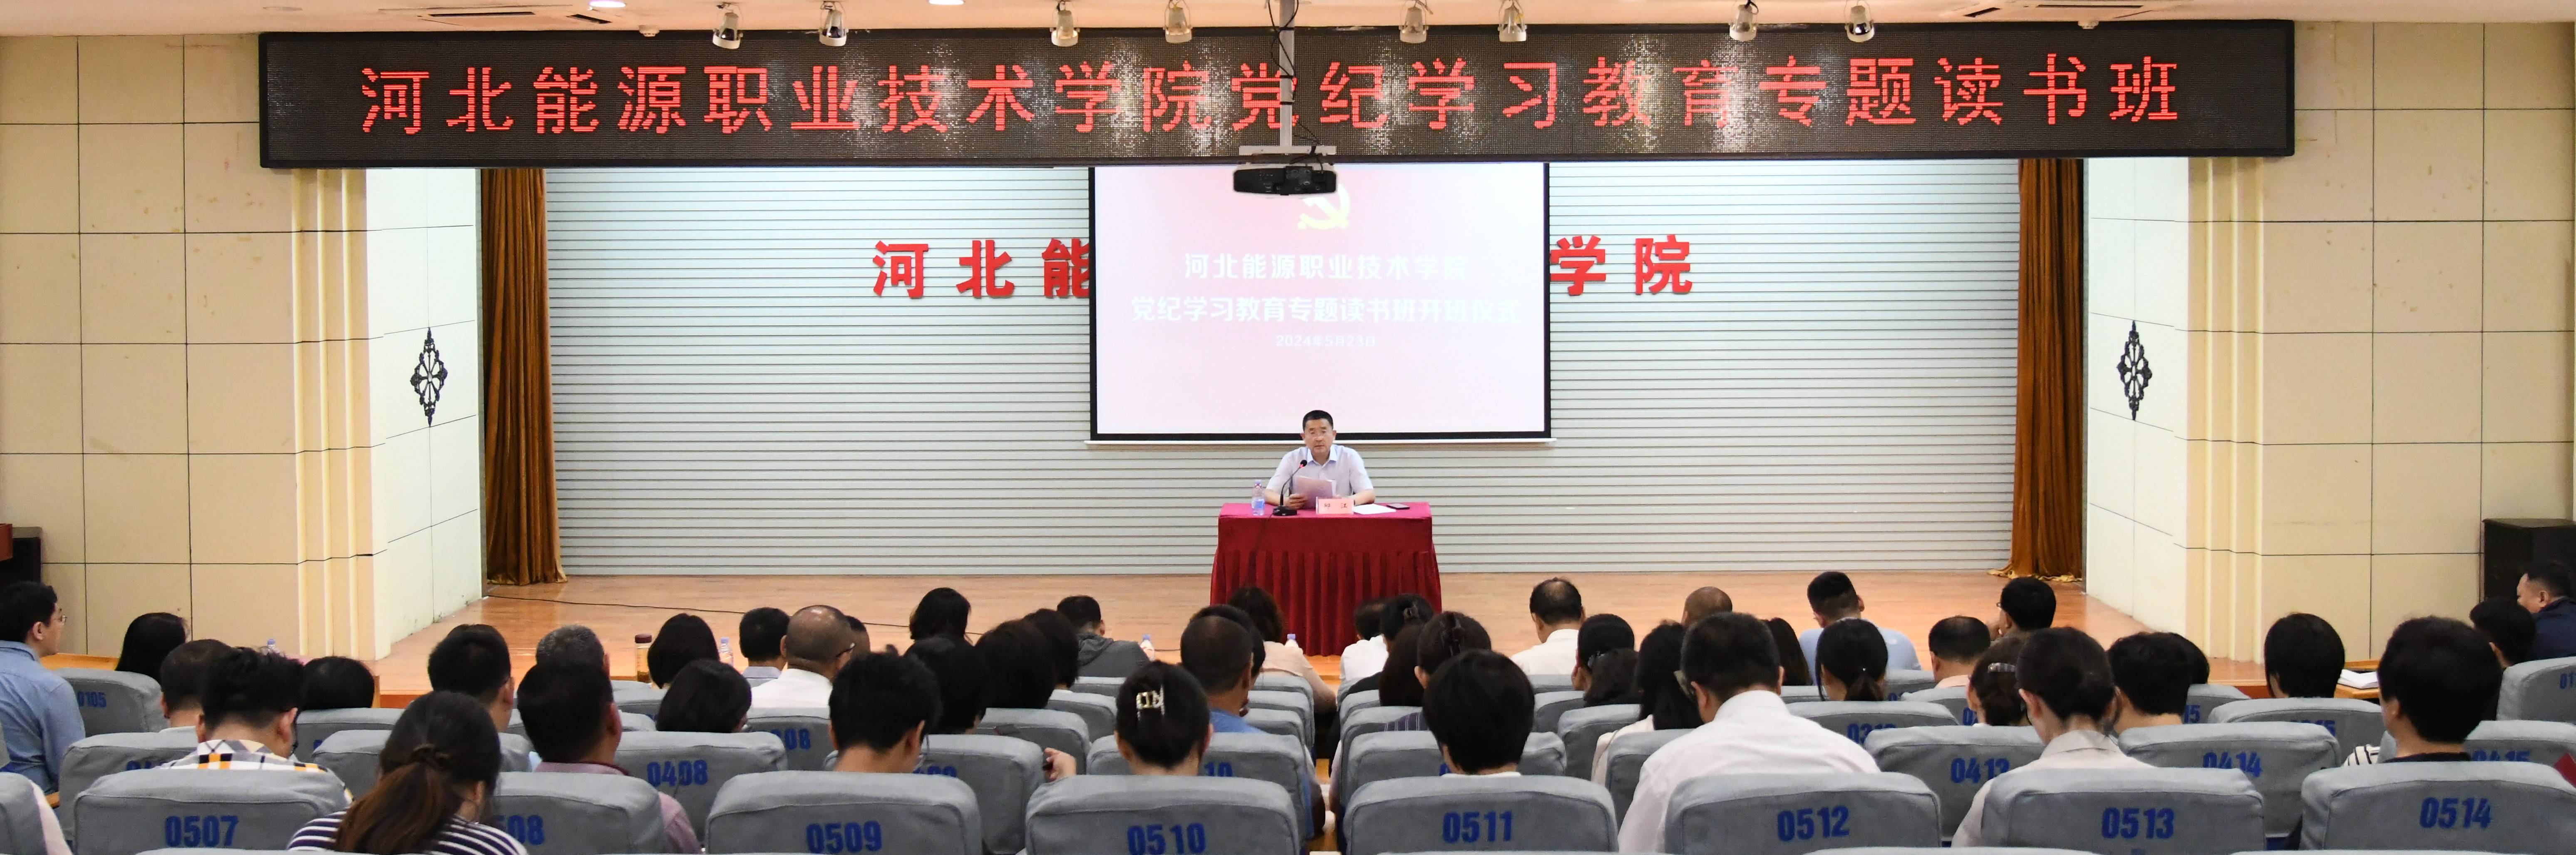 河北能源职业技术学院举办党纪学习教育专题读书班